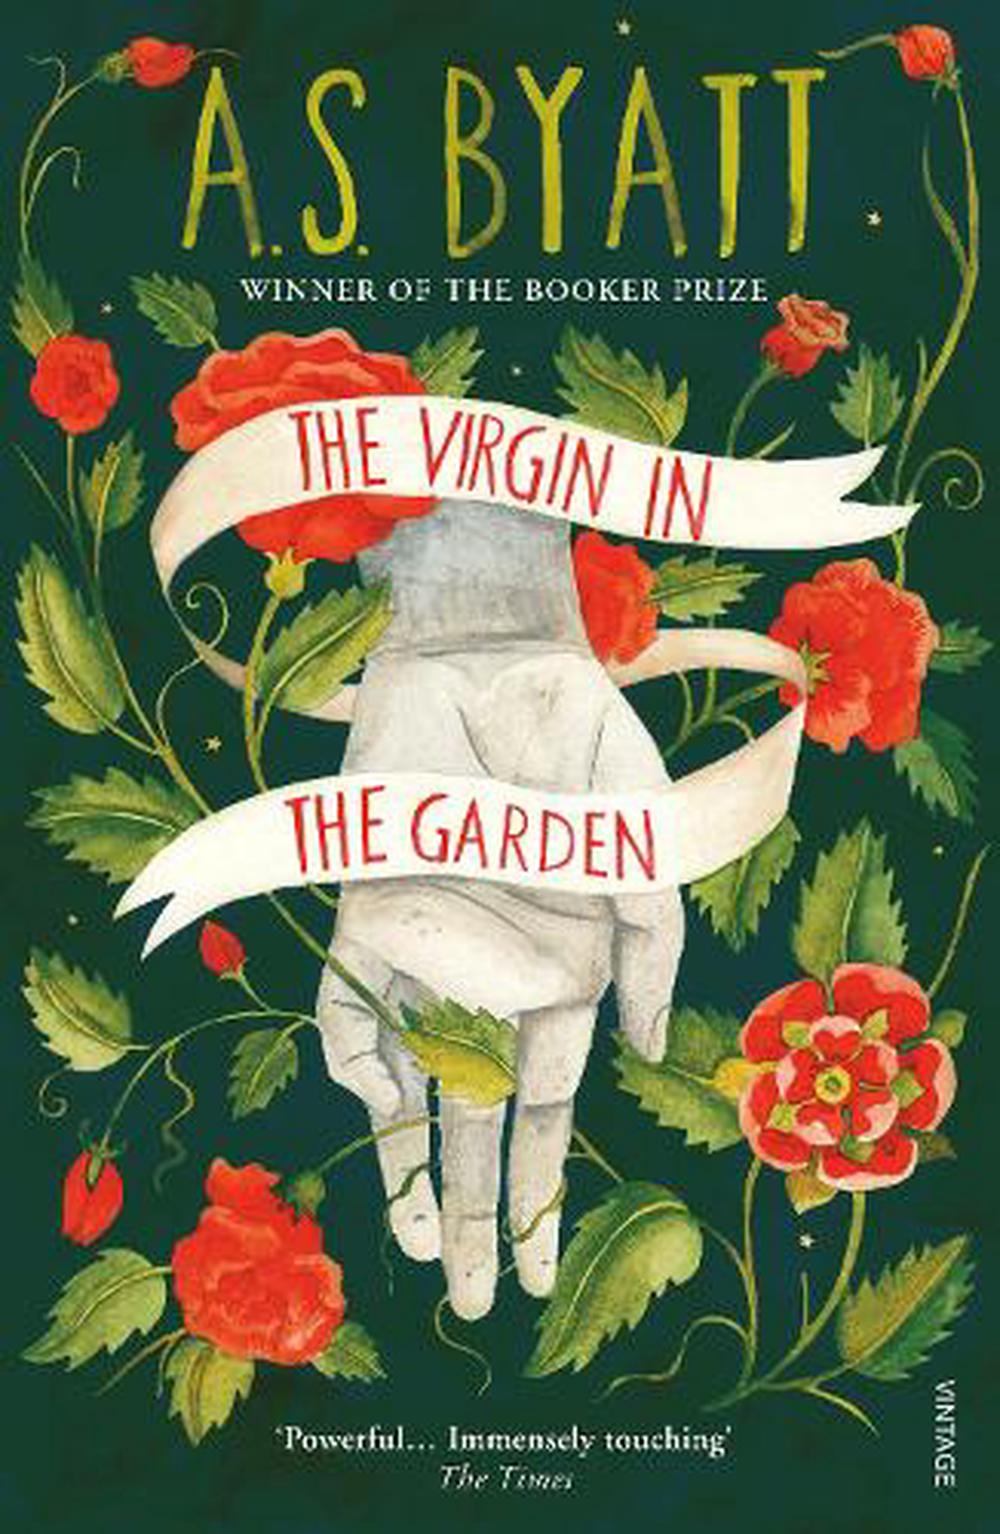 the virgin in the garden by as byatt